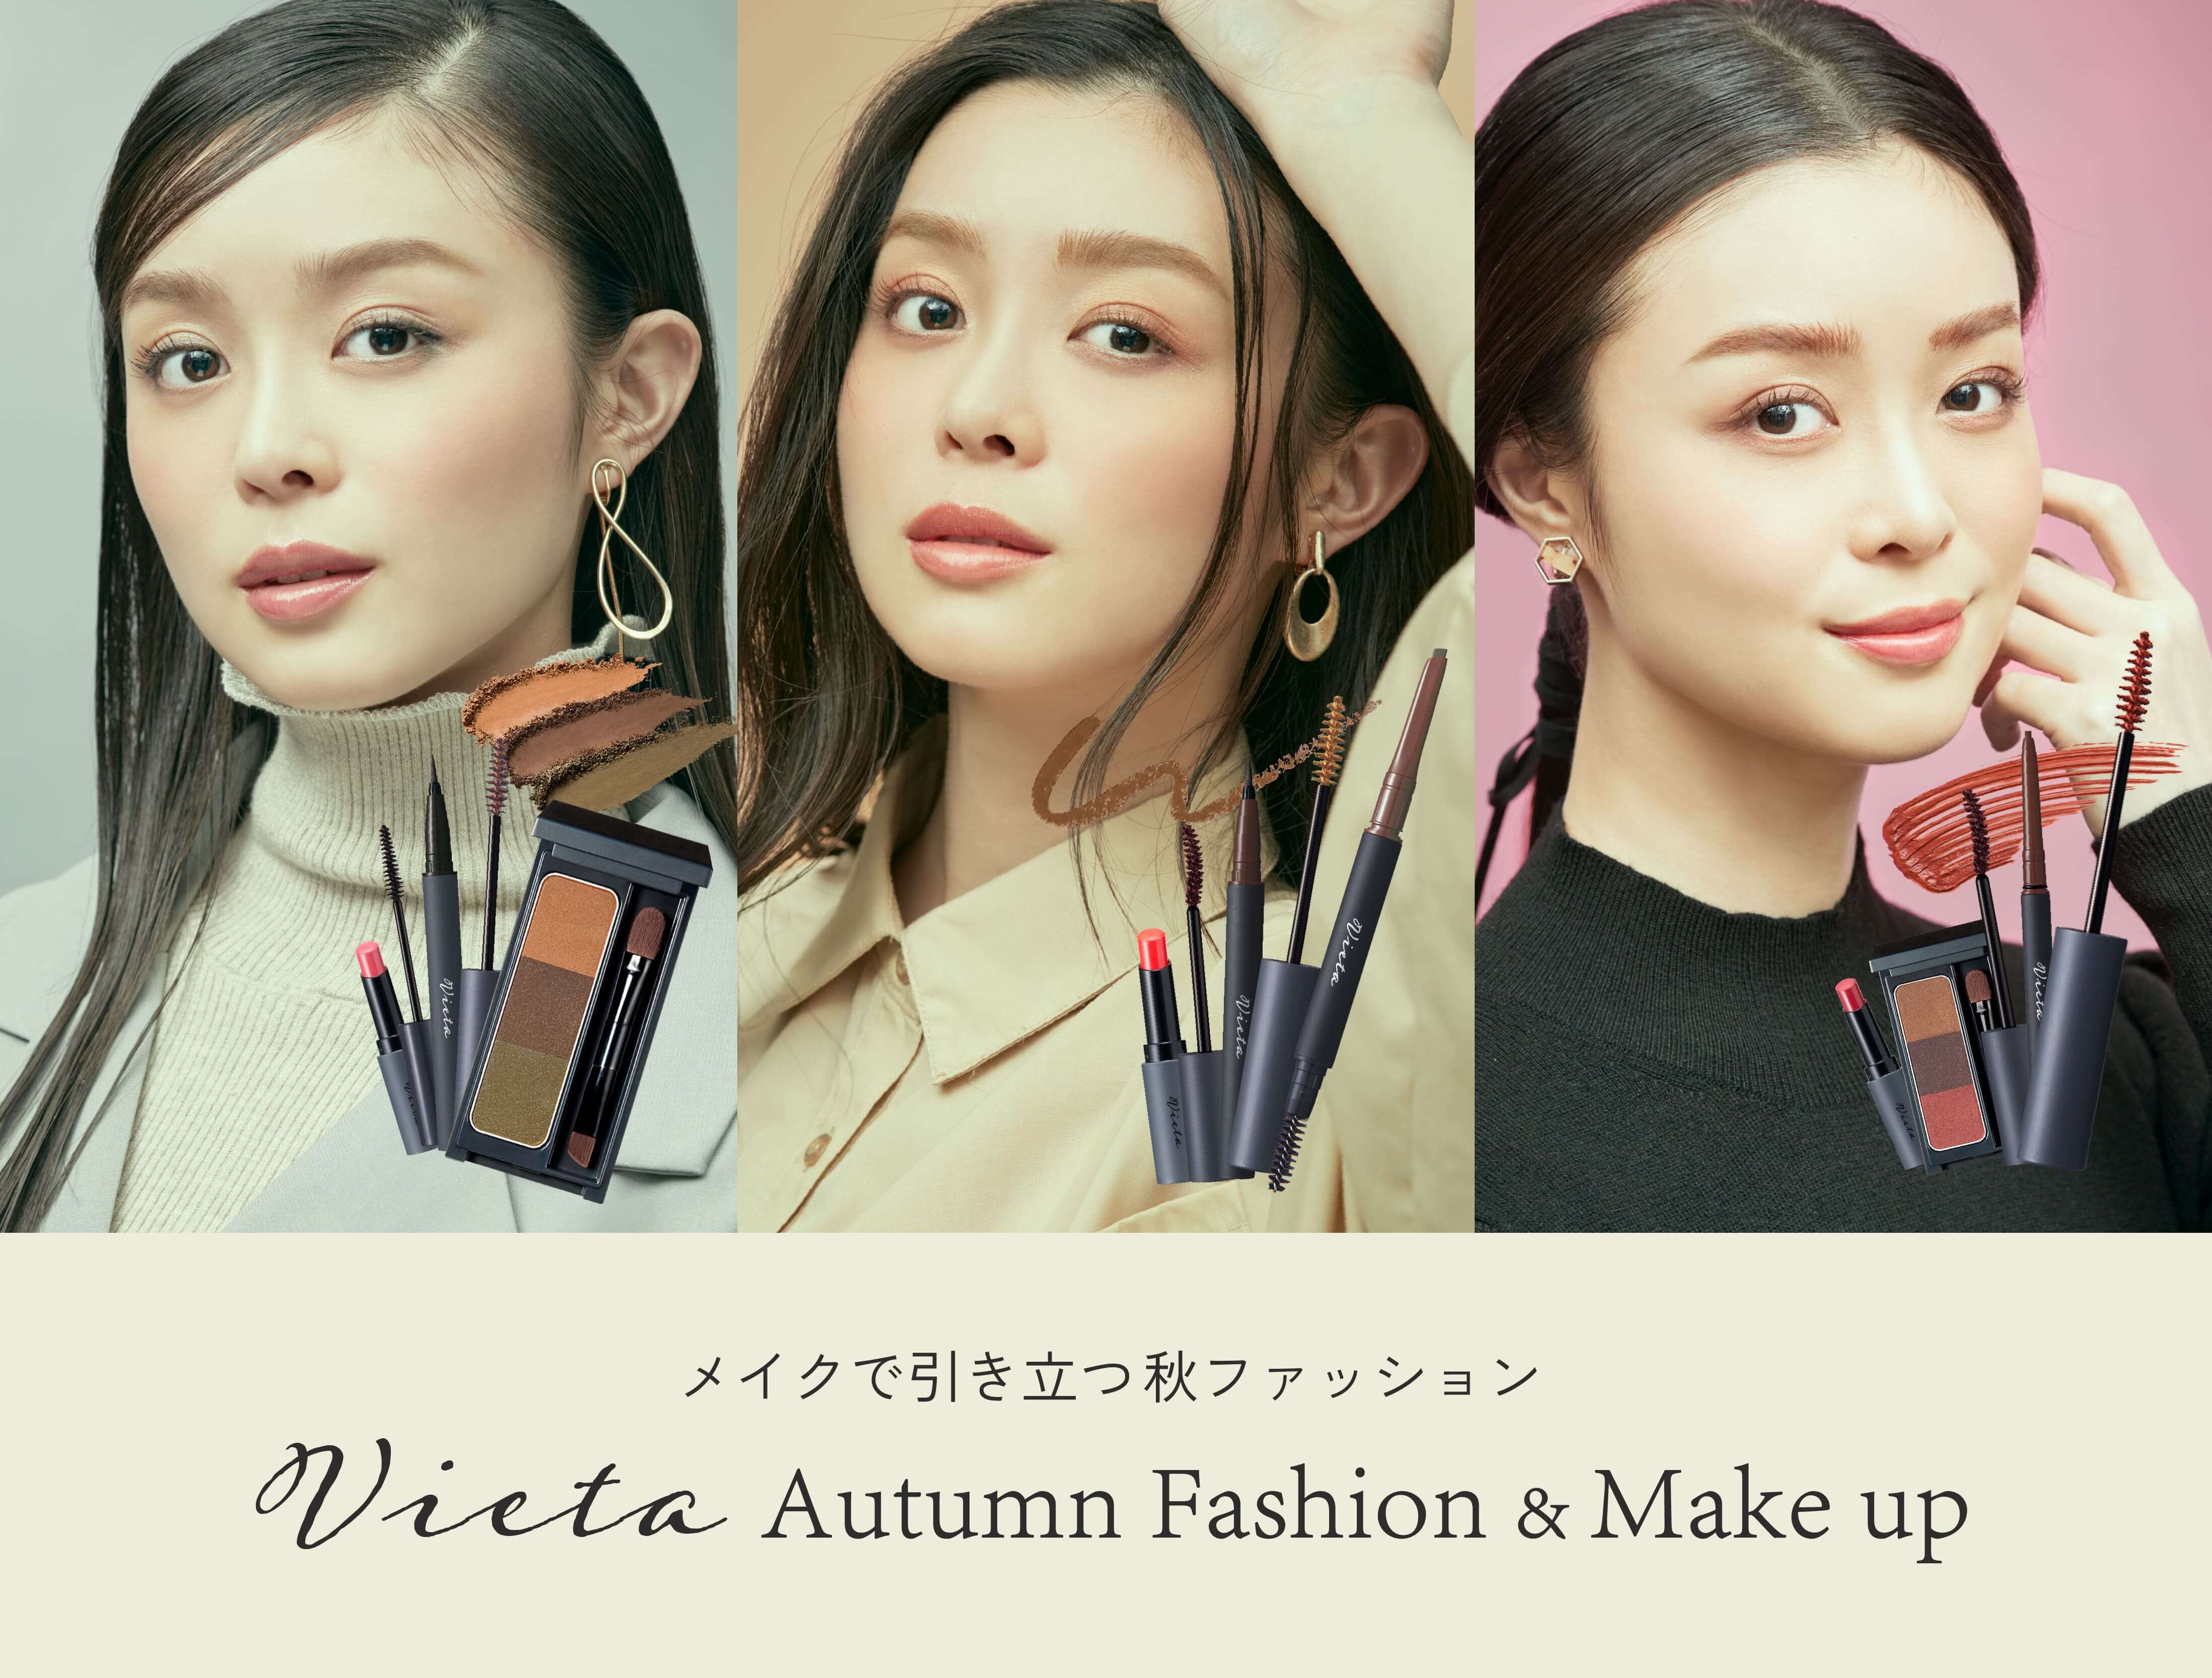 メイクで引き立つ秋ファッション	Vieta Autumn Fashion & Make up